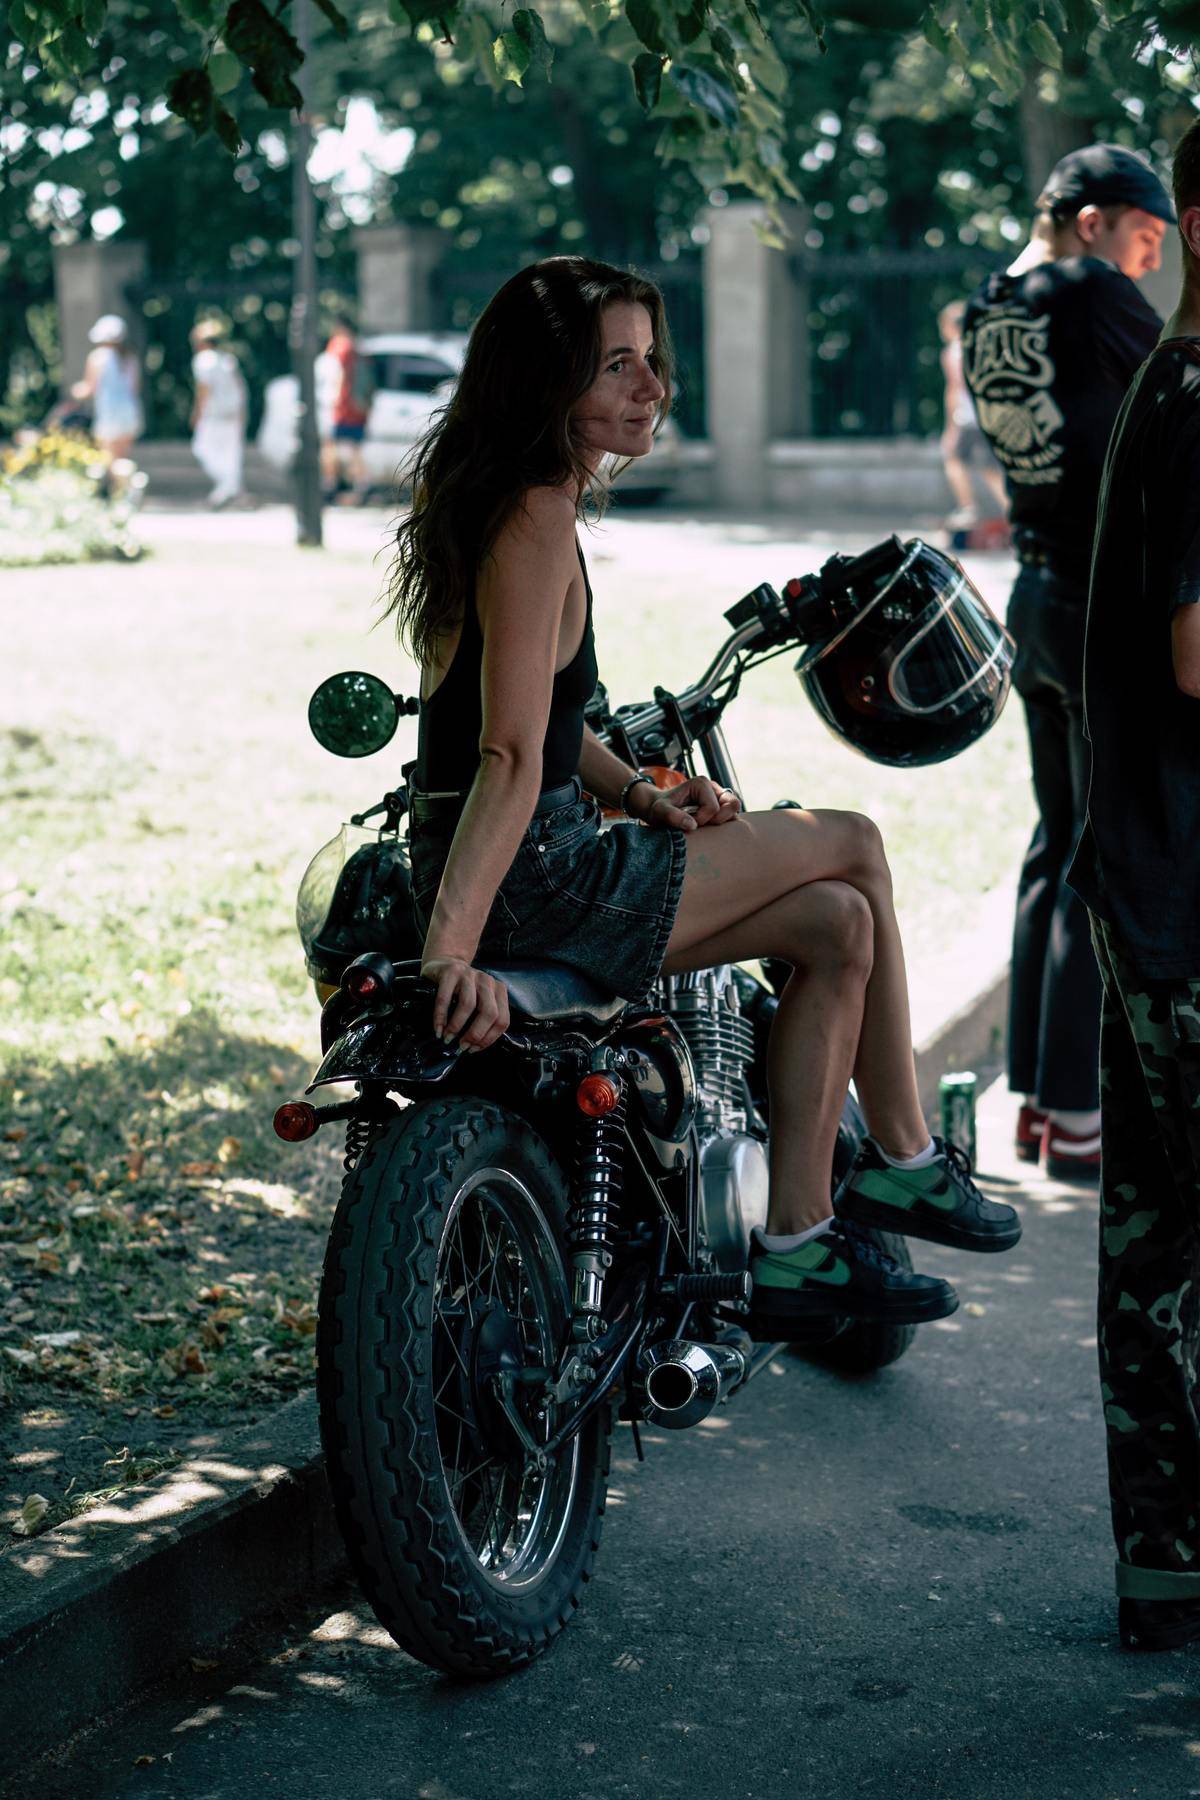 Самые крутые женские мотоклубы в мире